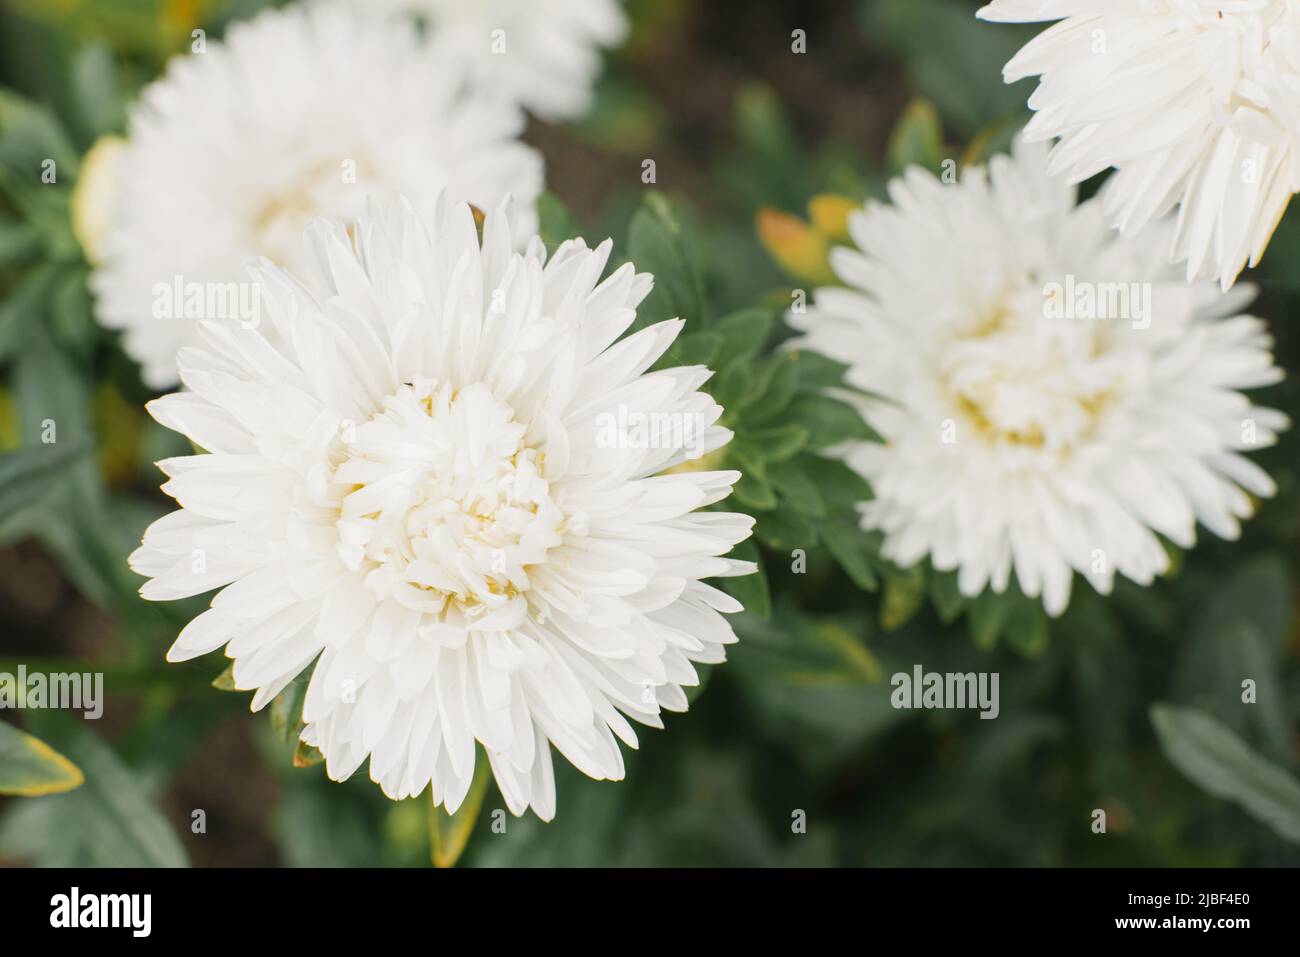 White aster flower in the garden Stock Photo